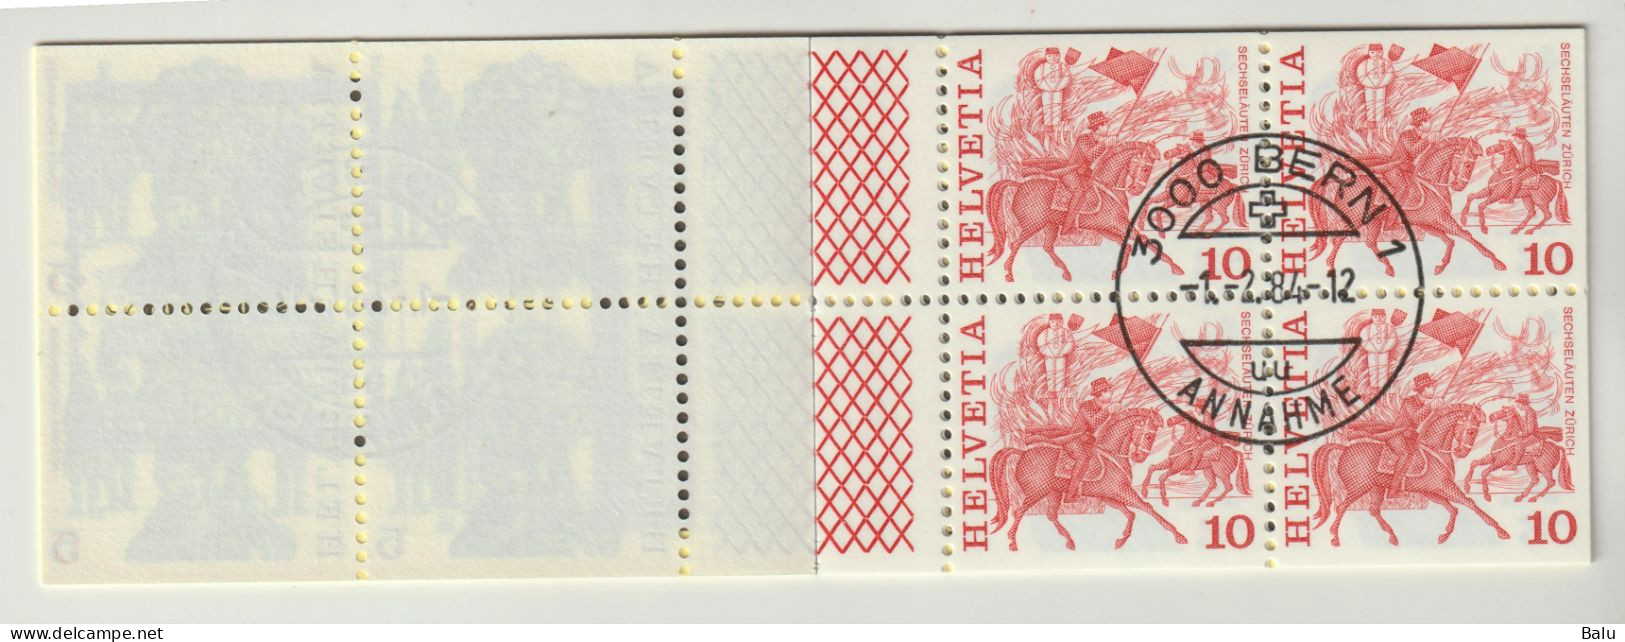 Schweiz 1984 Markenheftchen 78 FDC Gestempelt, Trachten 5 Fr., Heft Nr. O-78a, Bern 1.2.84, 6 Scans - Postzegelboekjes